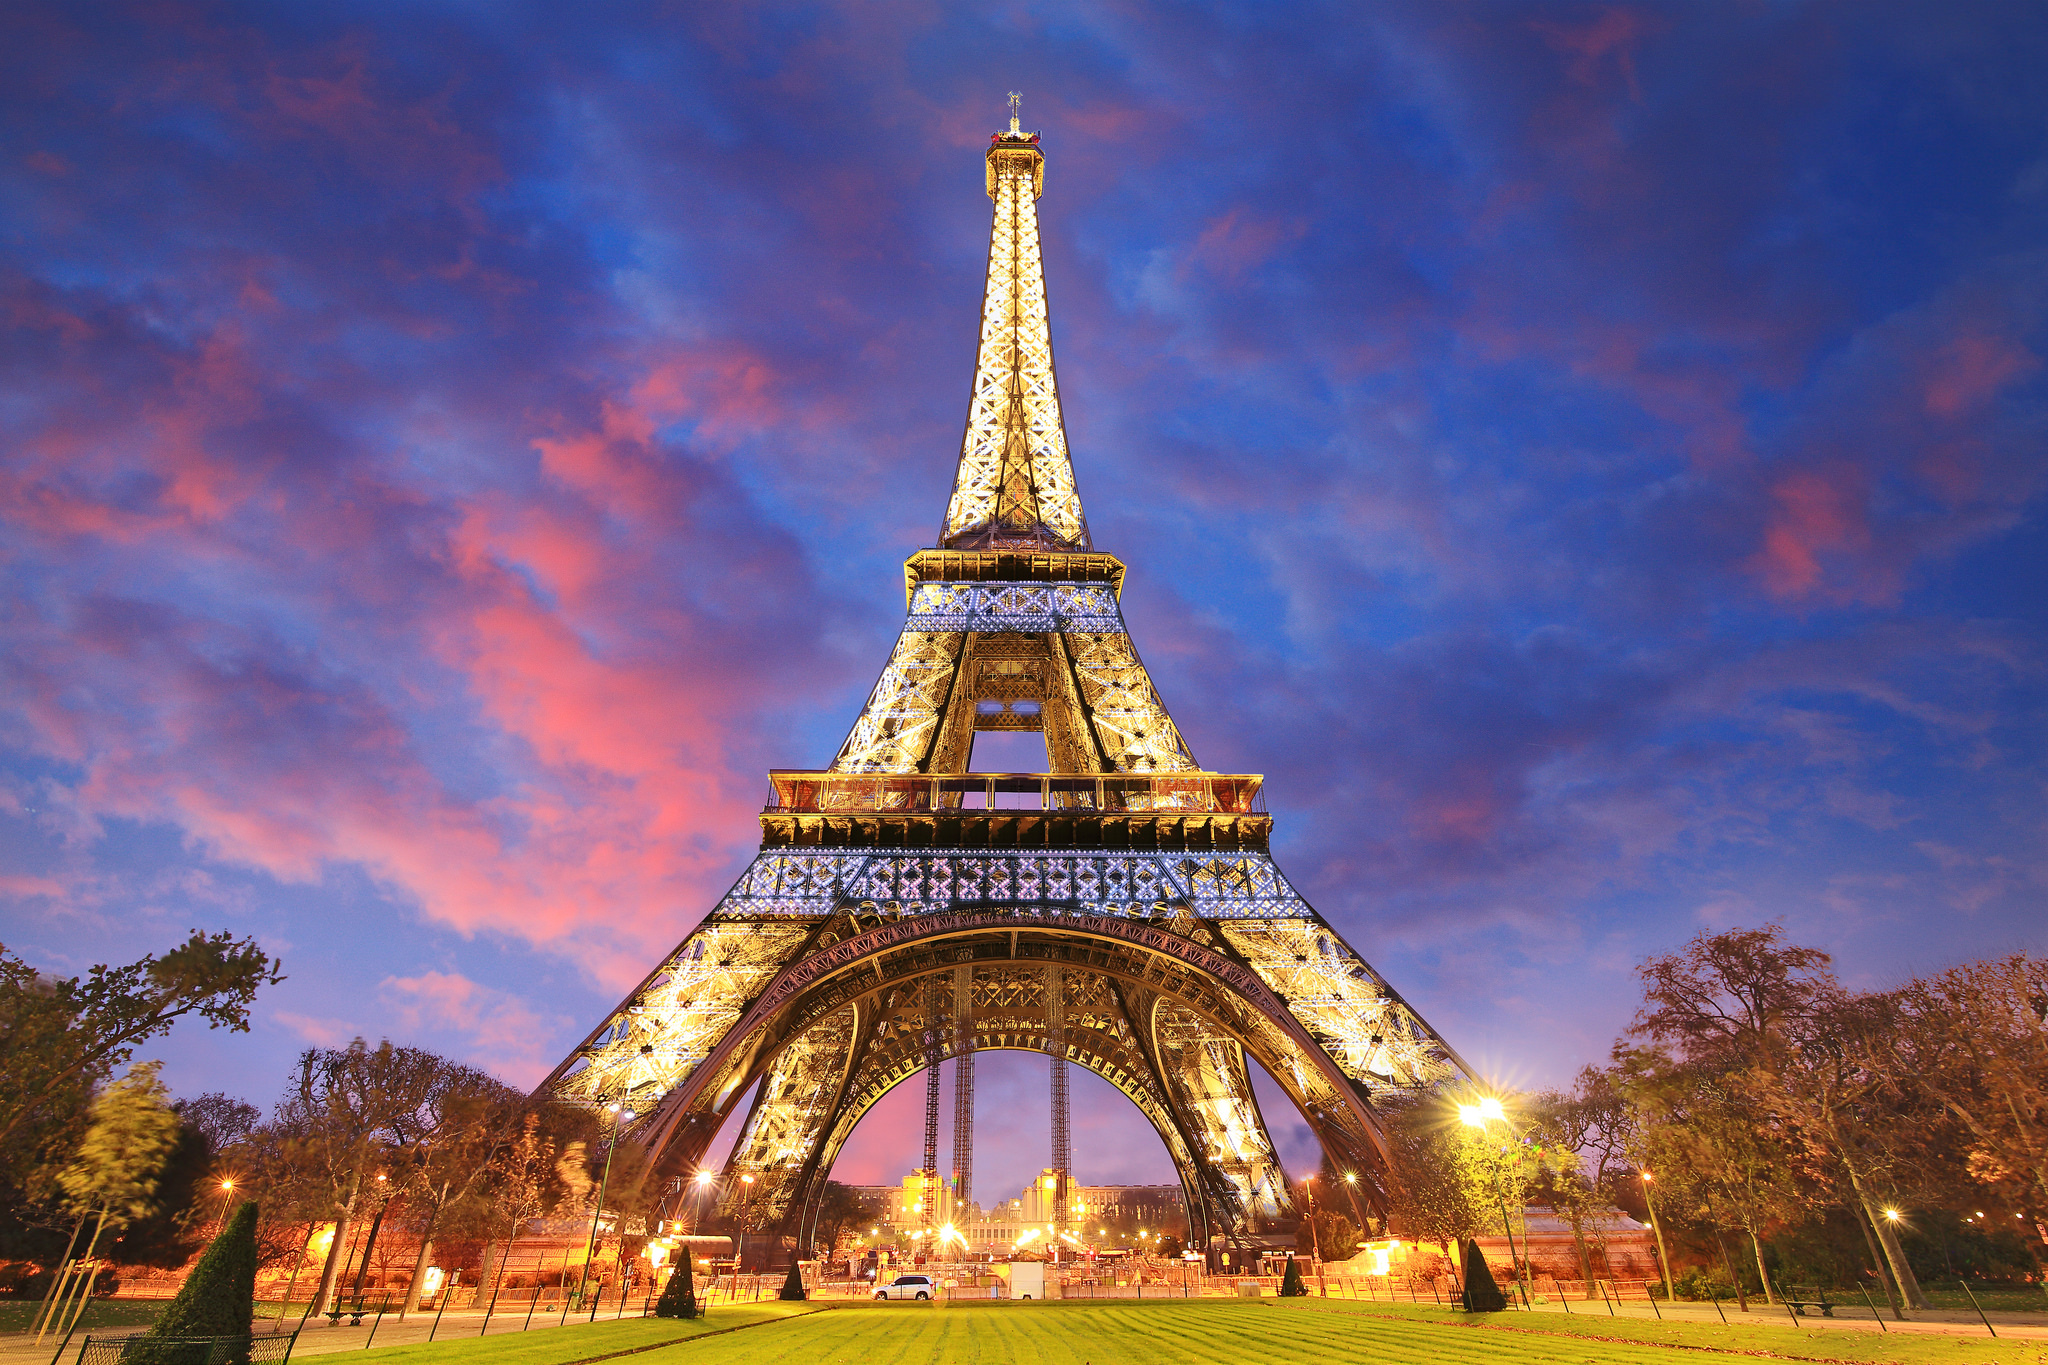 Tổng Hợp 50+ Hình Ảnh Tháp Eiffel Đẹp, Lộng Lấy, Hùng Vĩ Nhất 64